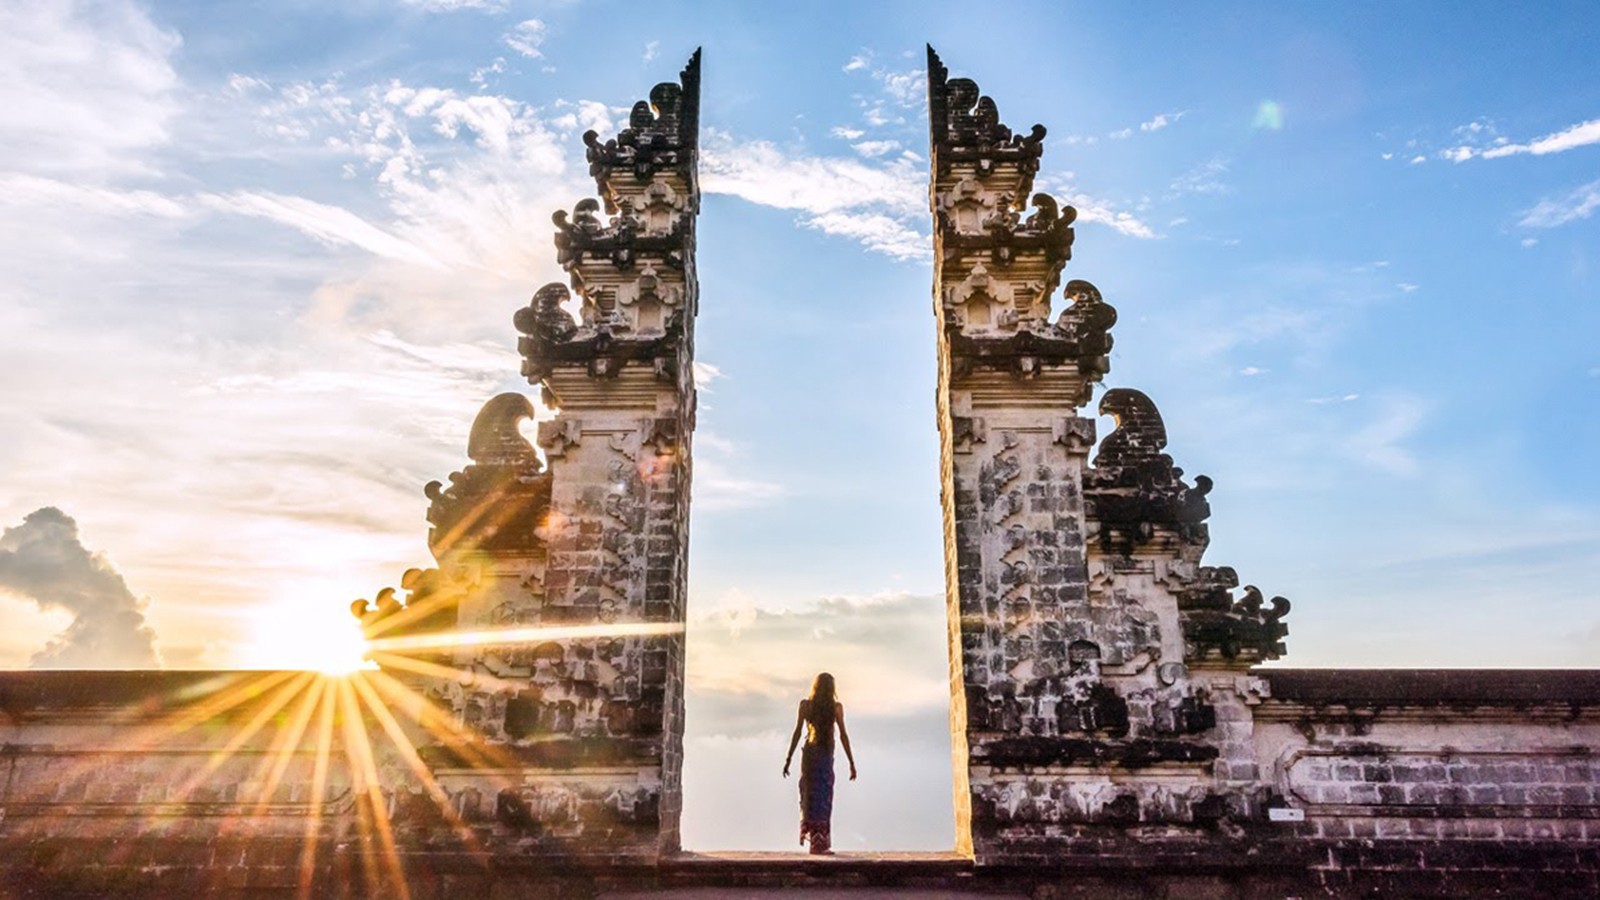 Cổng trời Bali - Toạ độ check in mê "Hơn cả yêu" giữa đảo ngọc Indonesia